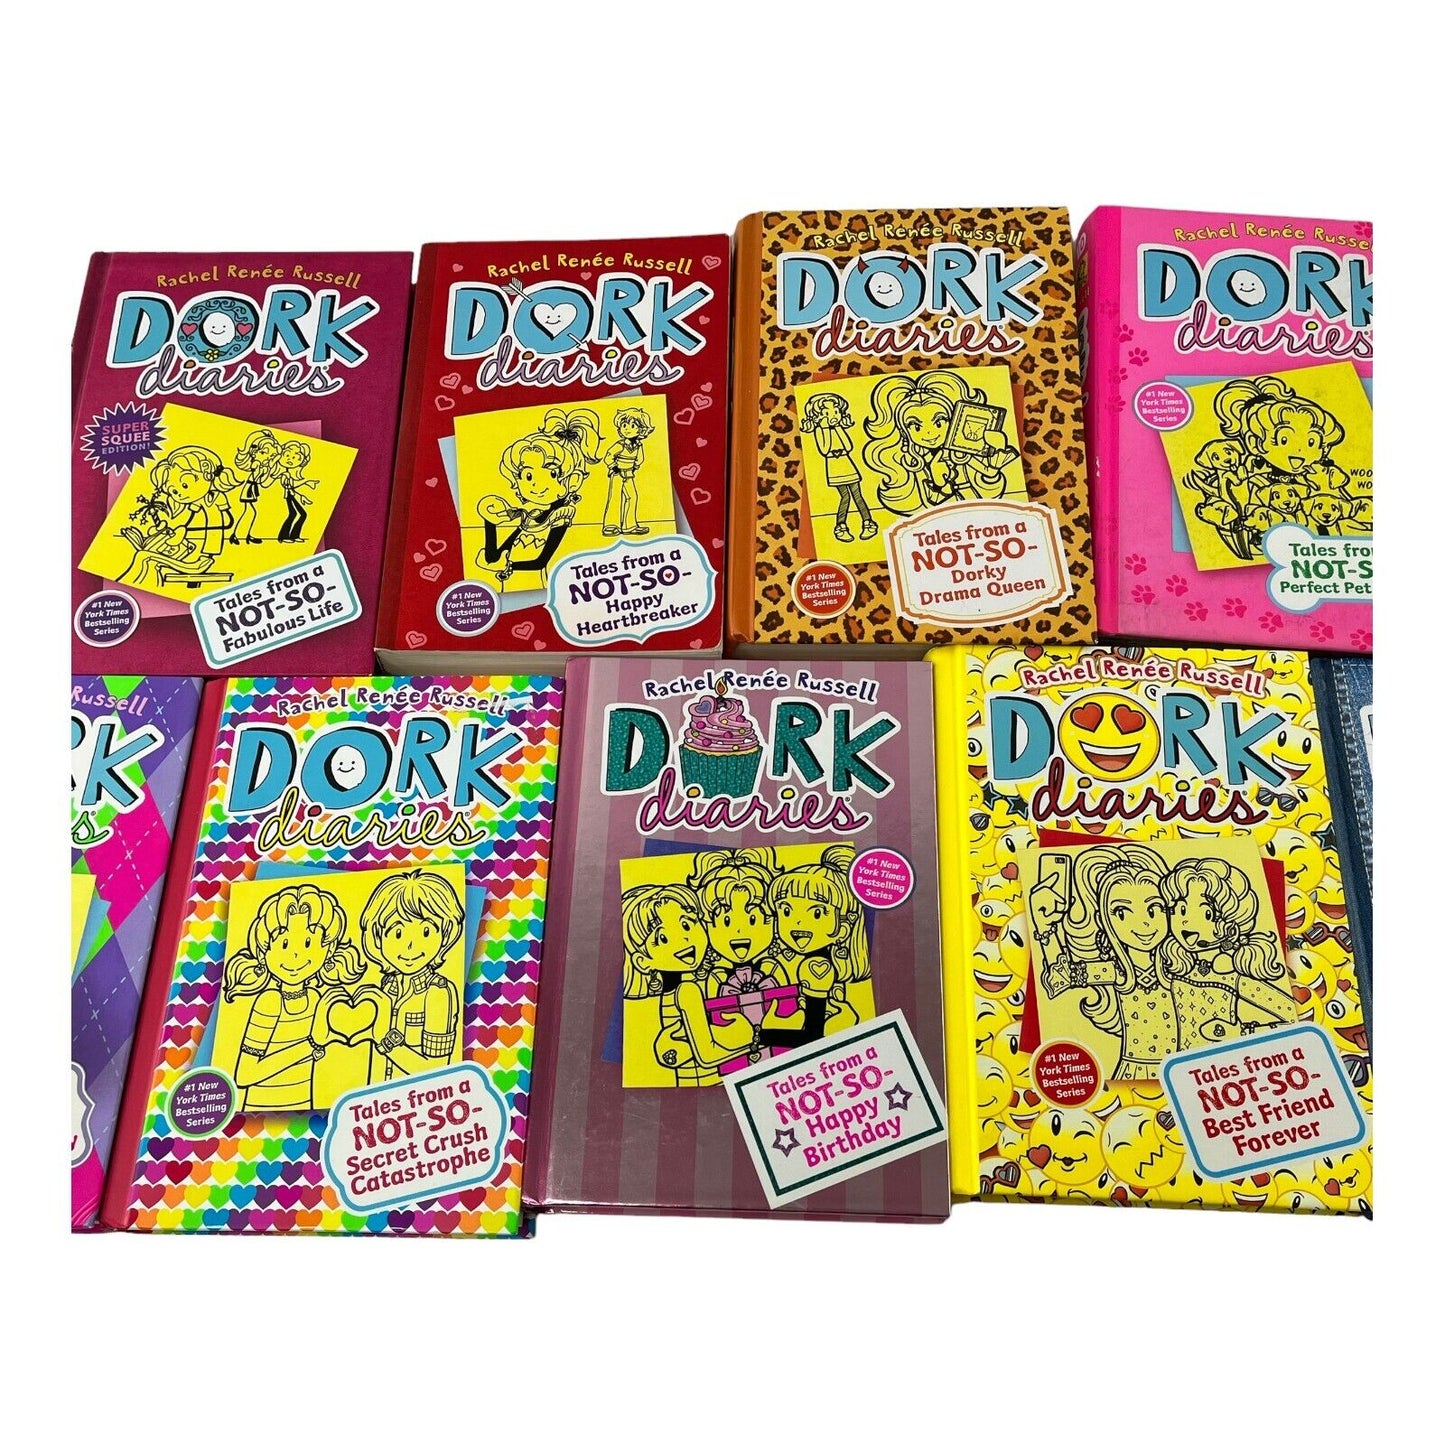 (9) Dork Diaries Hardcover Book Lot #1 #6 #10-14 OMG! Diary